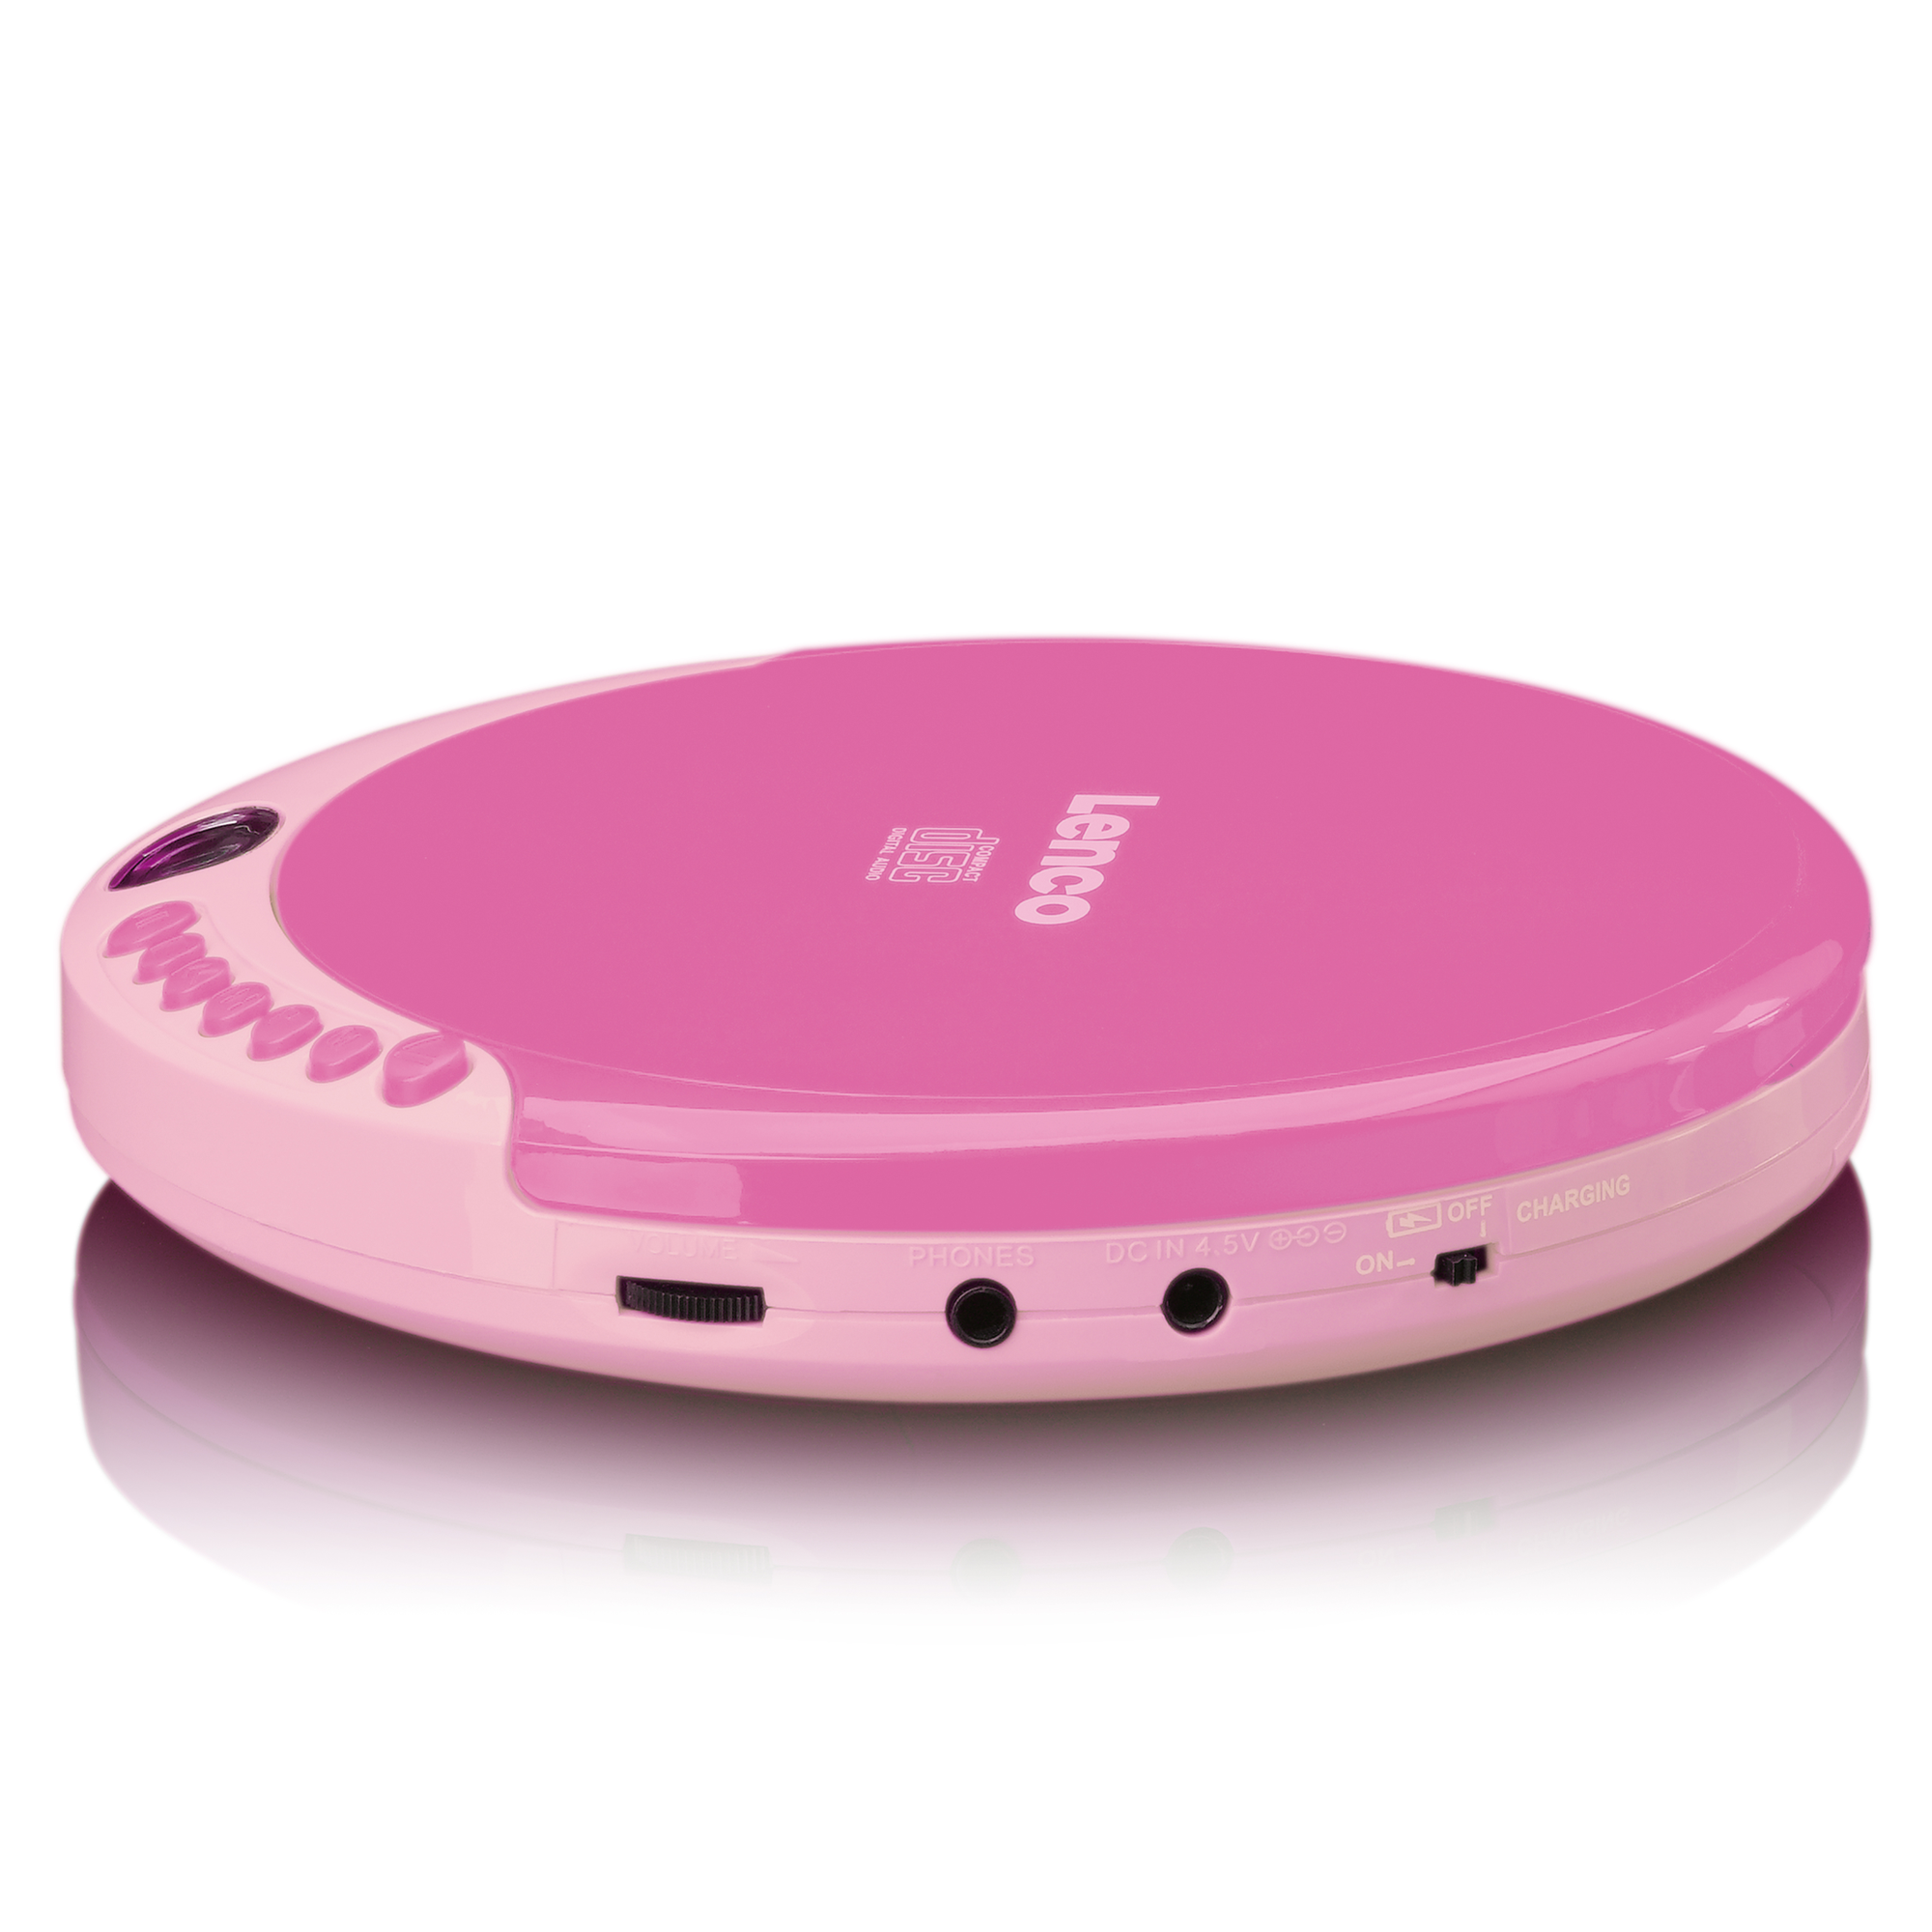 Pink CD-011PK CD-Spieler LENCO